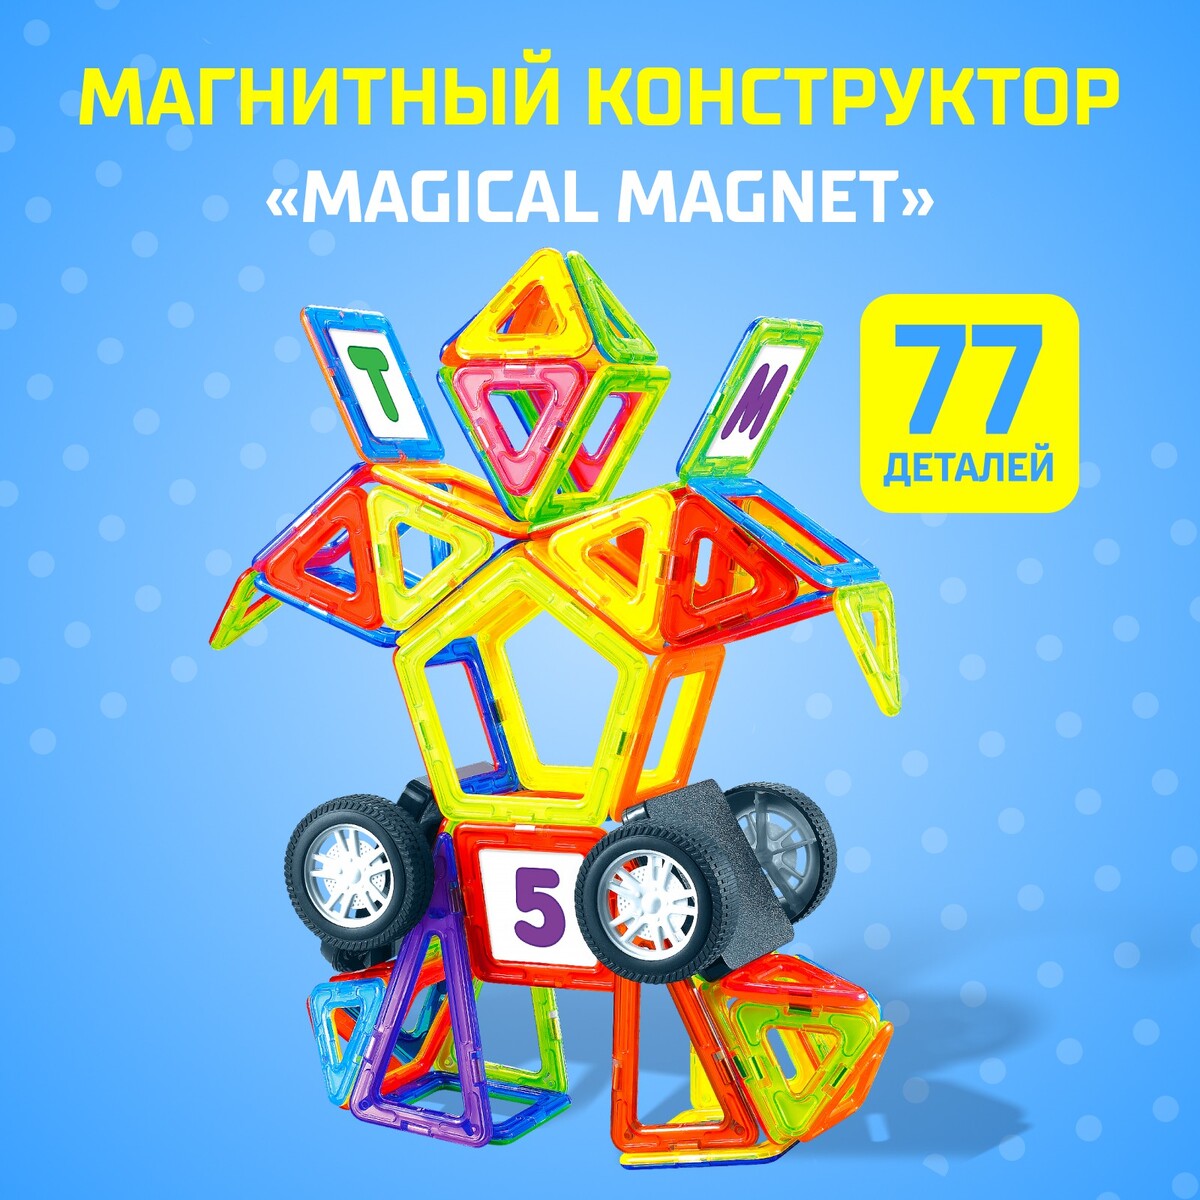 Магнитный конструктор magical magnet, 77 деталей, детали матовые магнитный конструктор magical magnet 56 деталей детали матовые